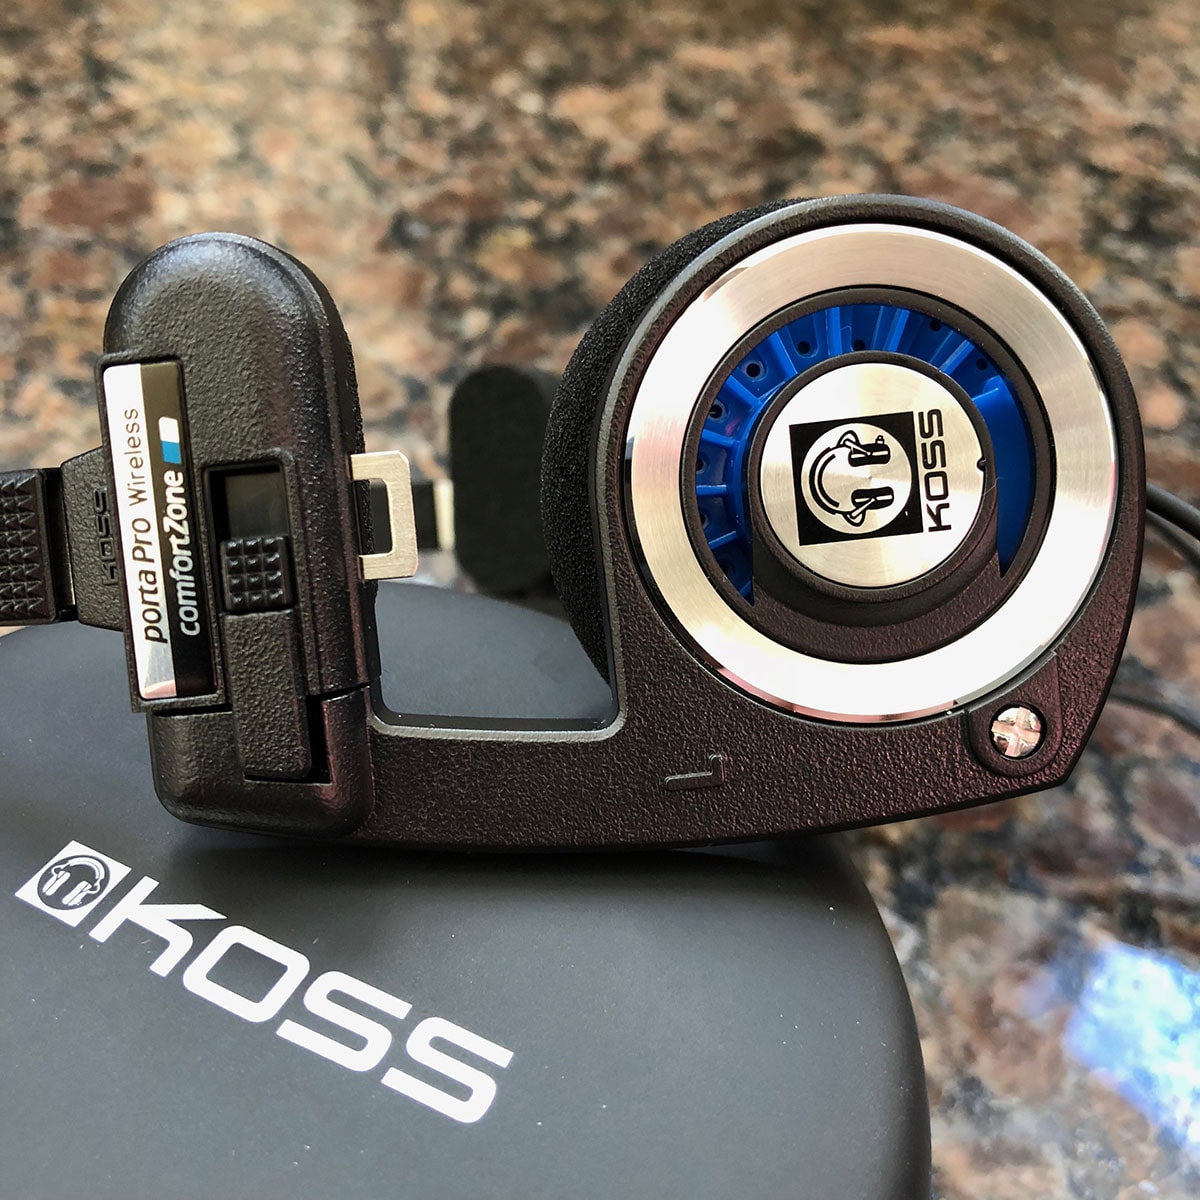 Review: Koss Porta Pro Wireless - If it ain't broke, don't fix it